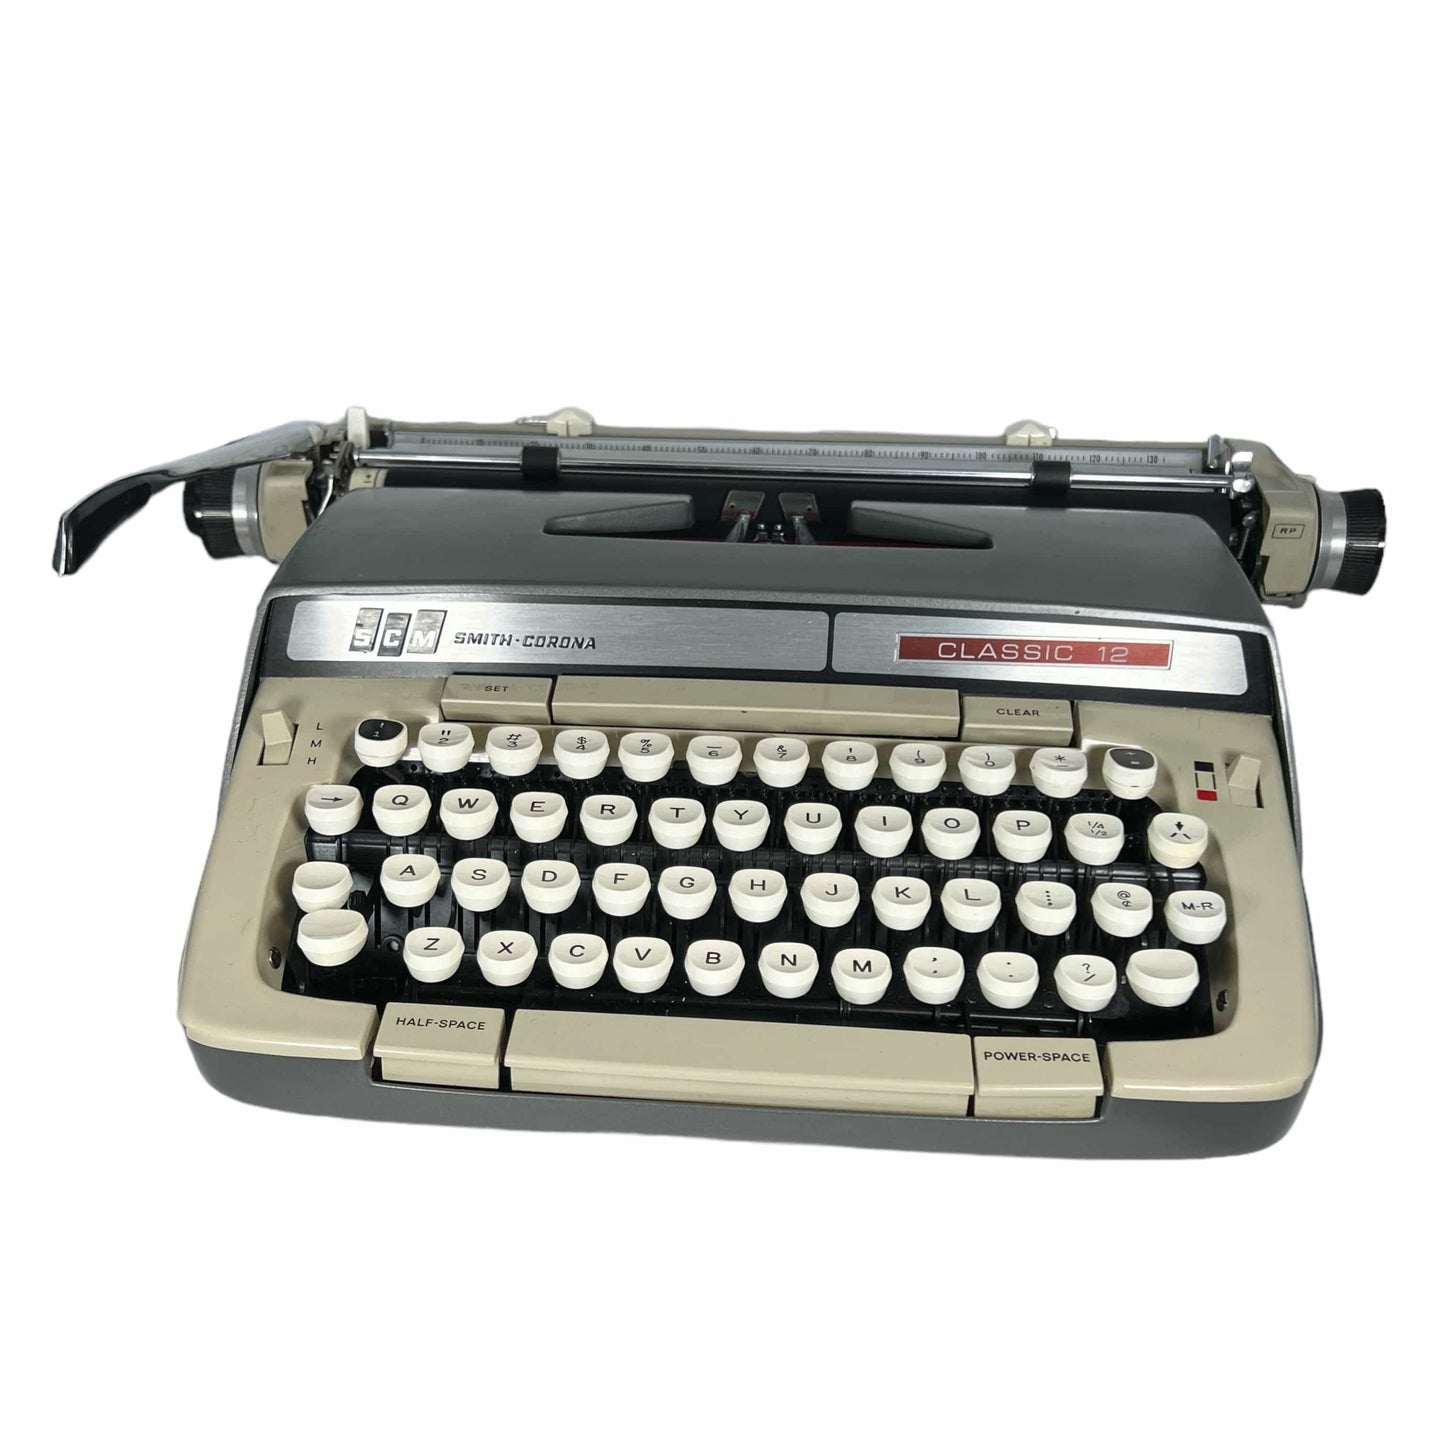 Toronto Typewriters Portable Typewriter Smith Corona Classic 12 Typewriter